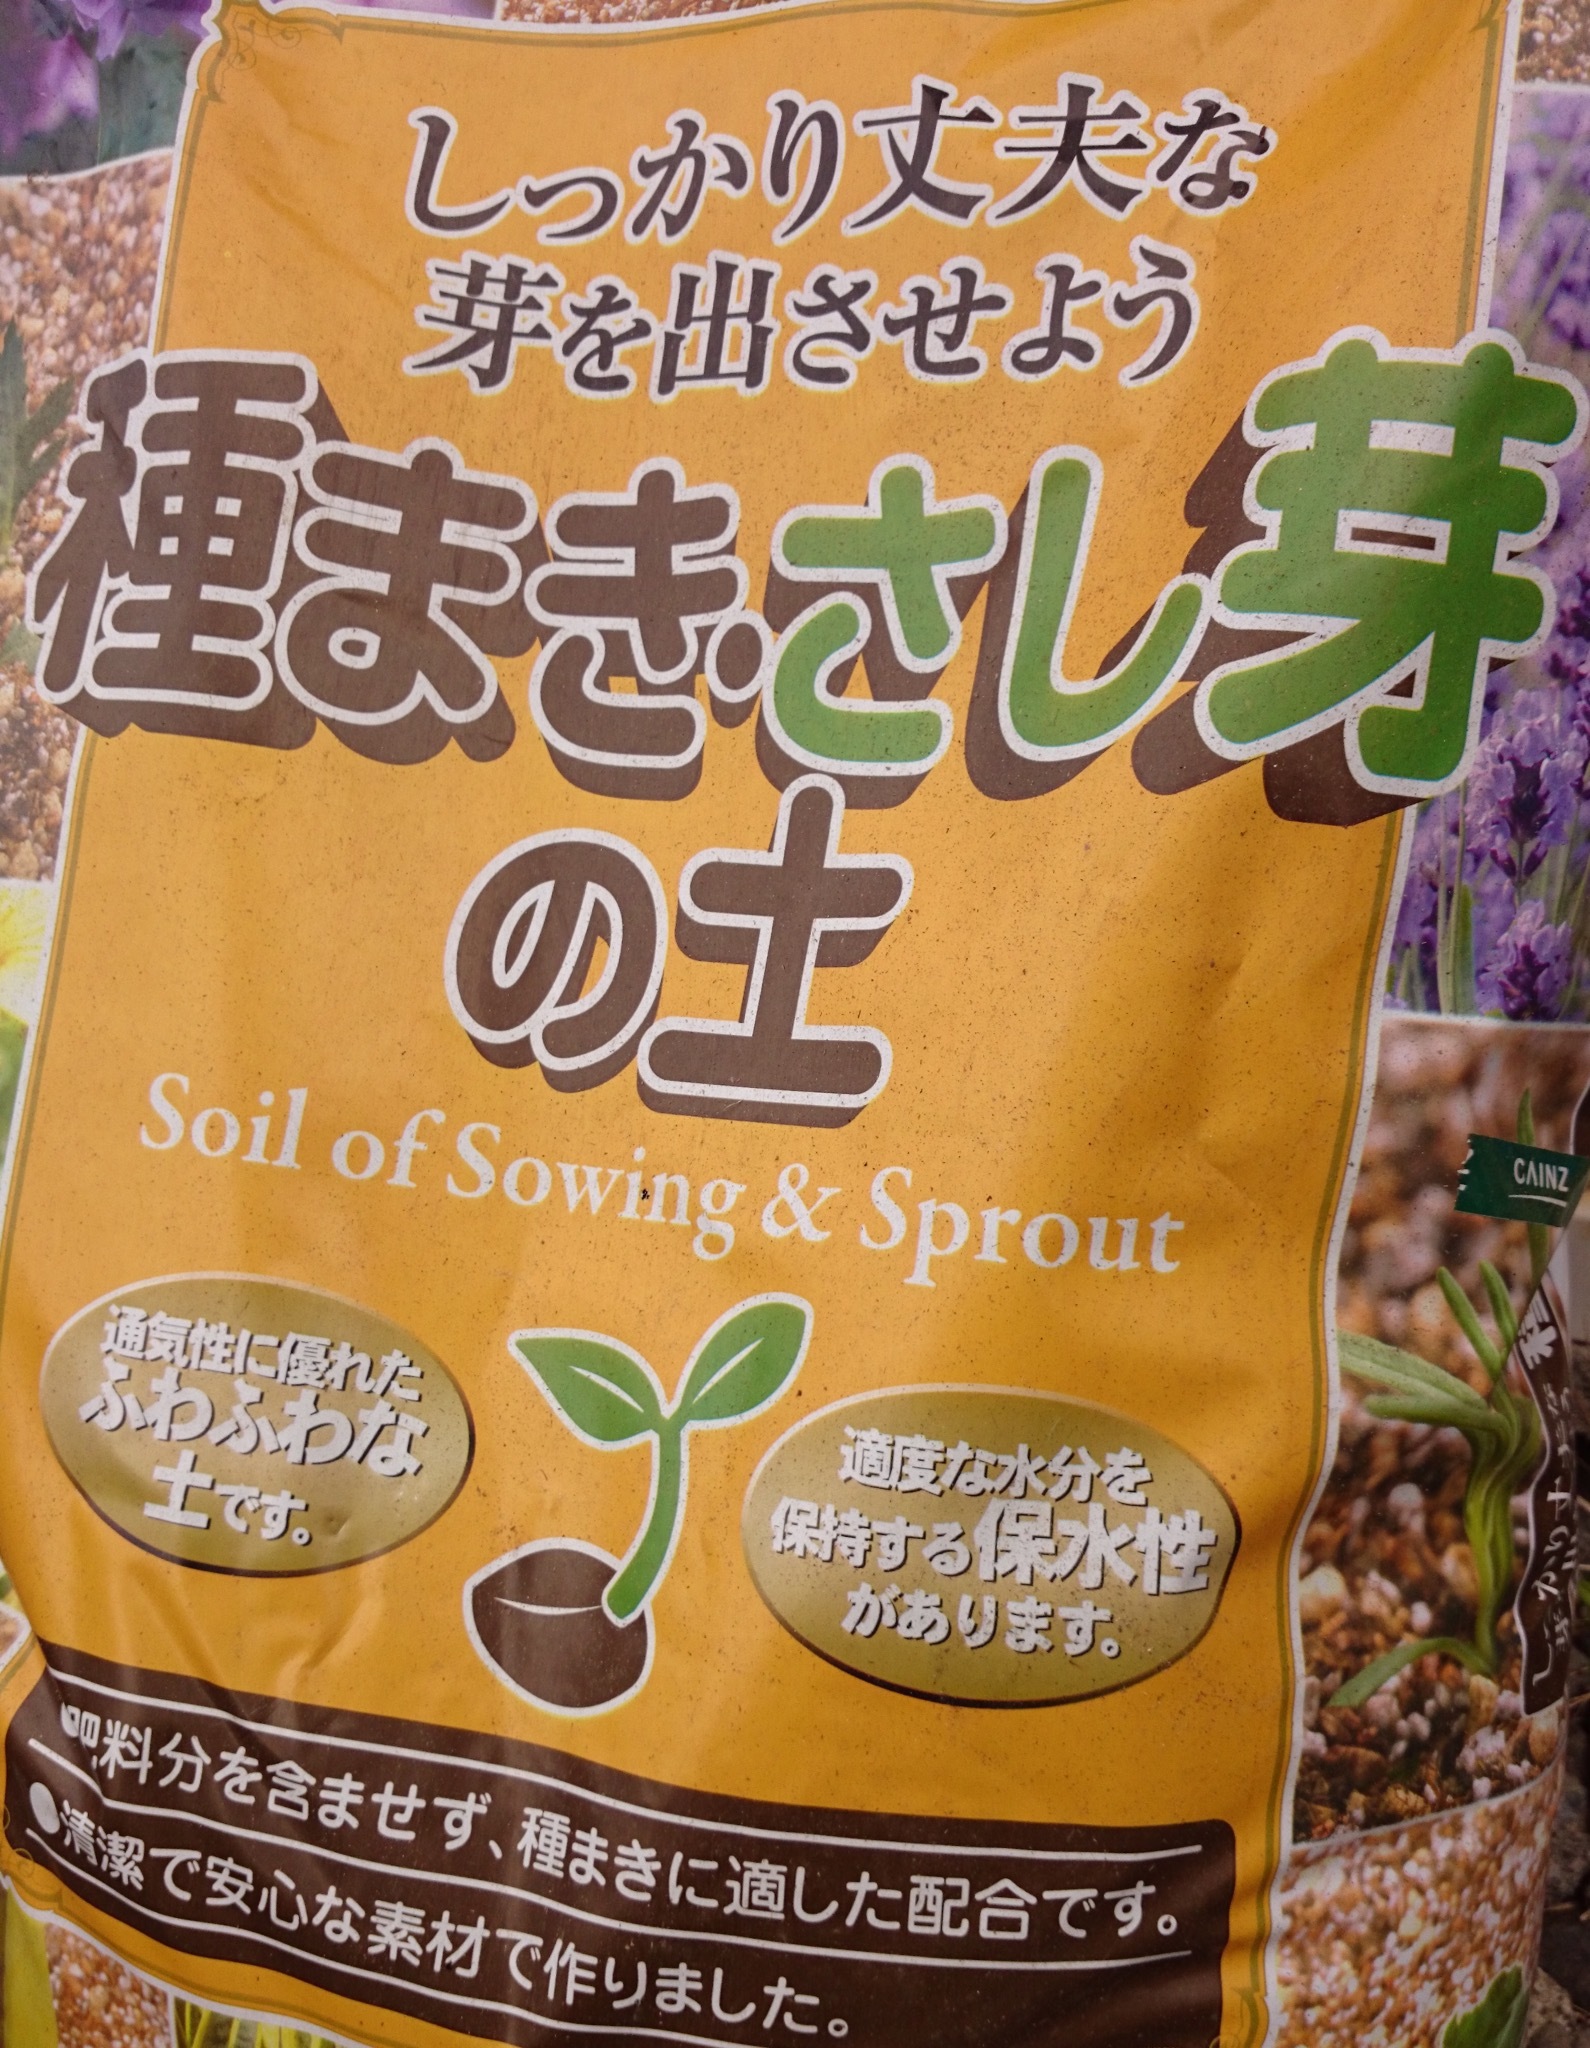 シャワー (アスパラガスの種) 1dl缶 野菜の種